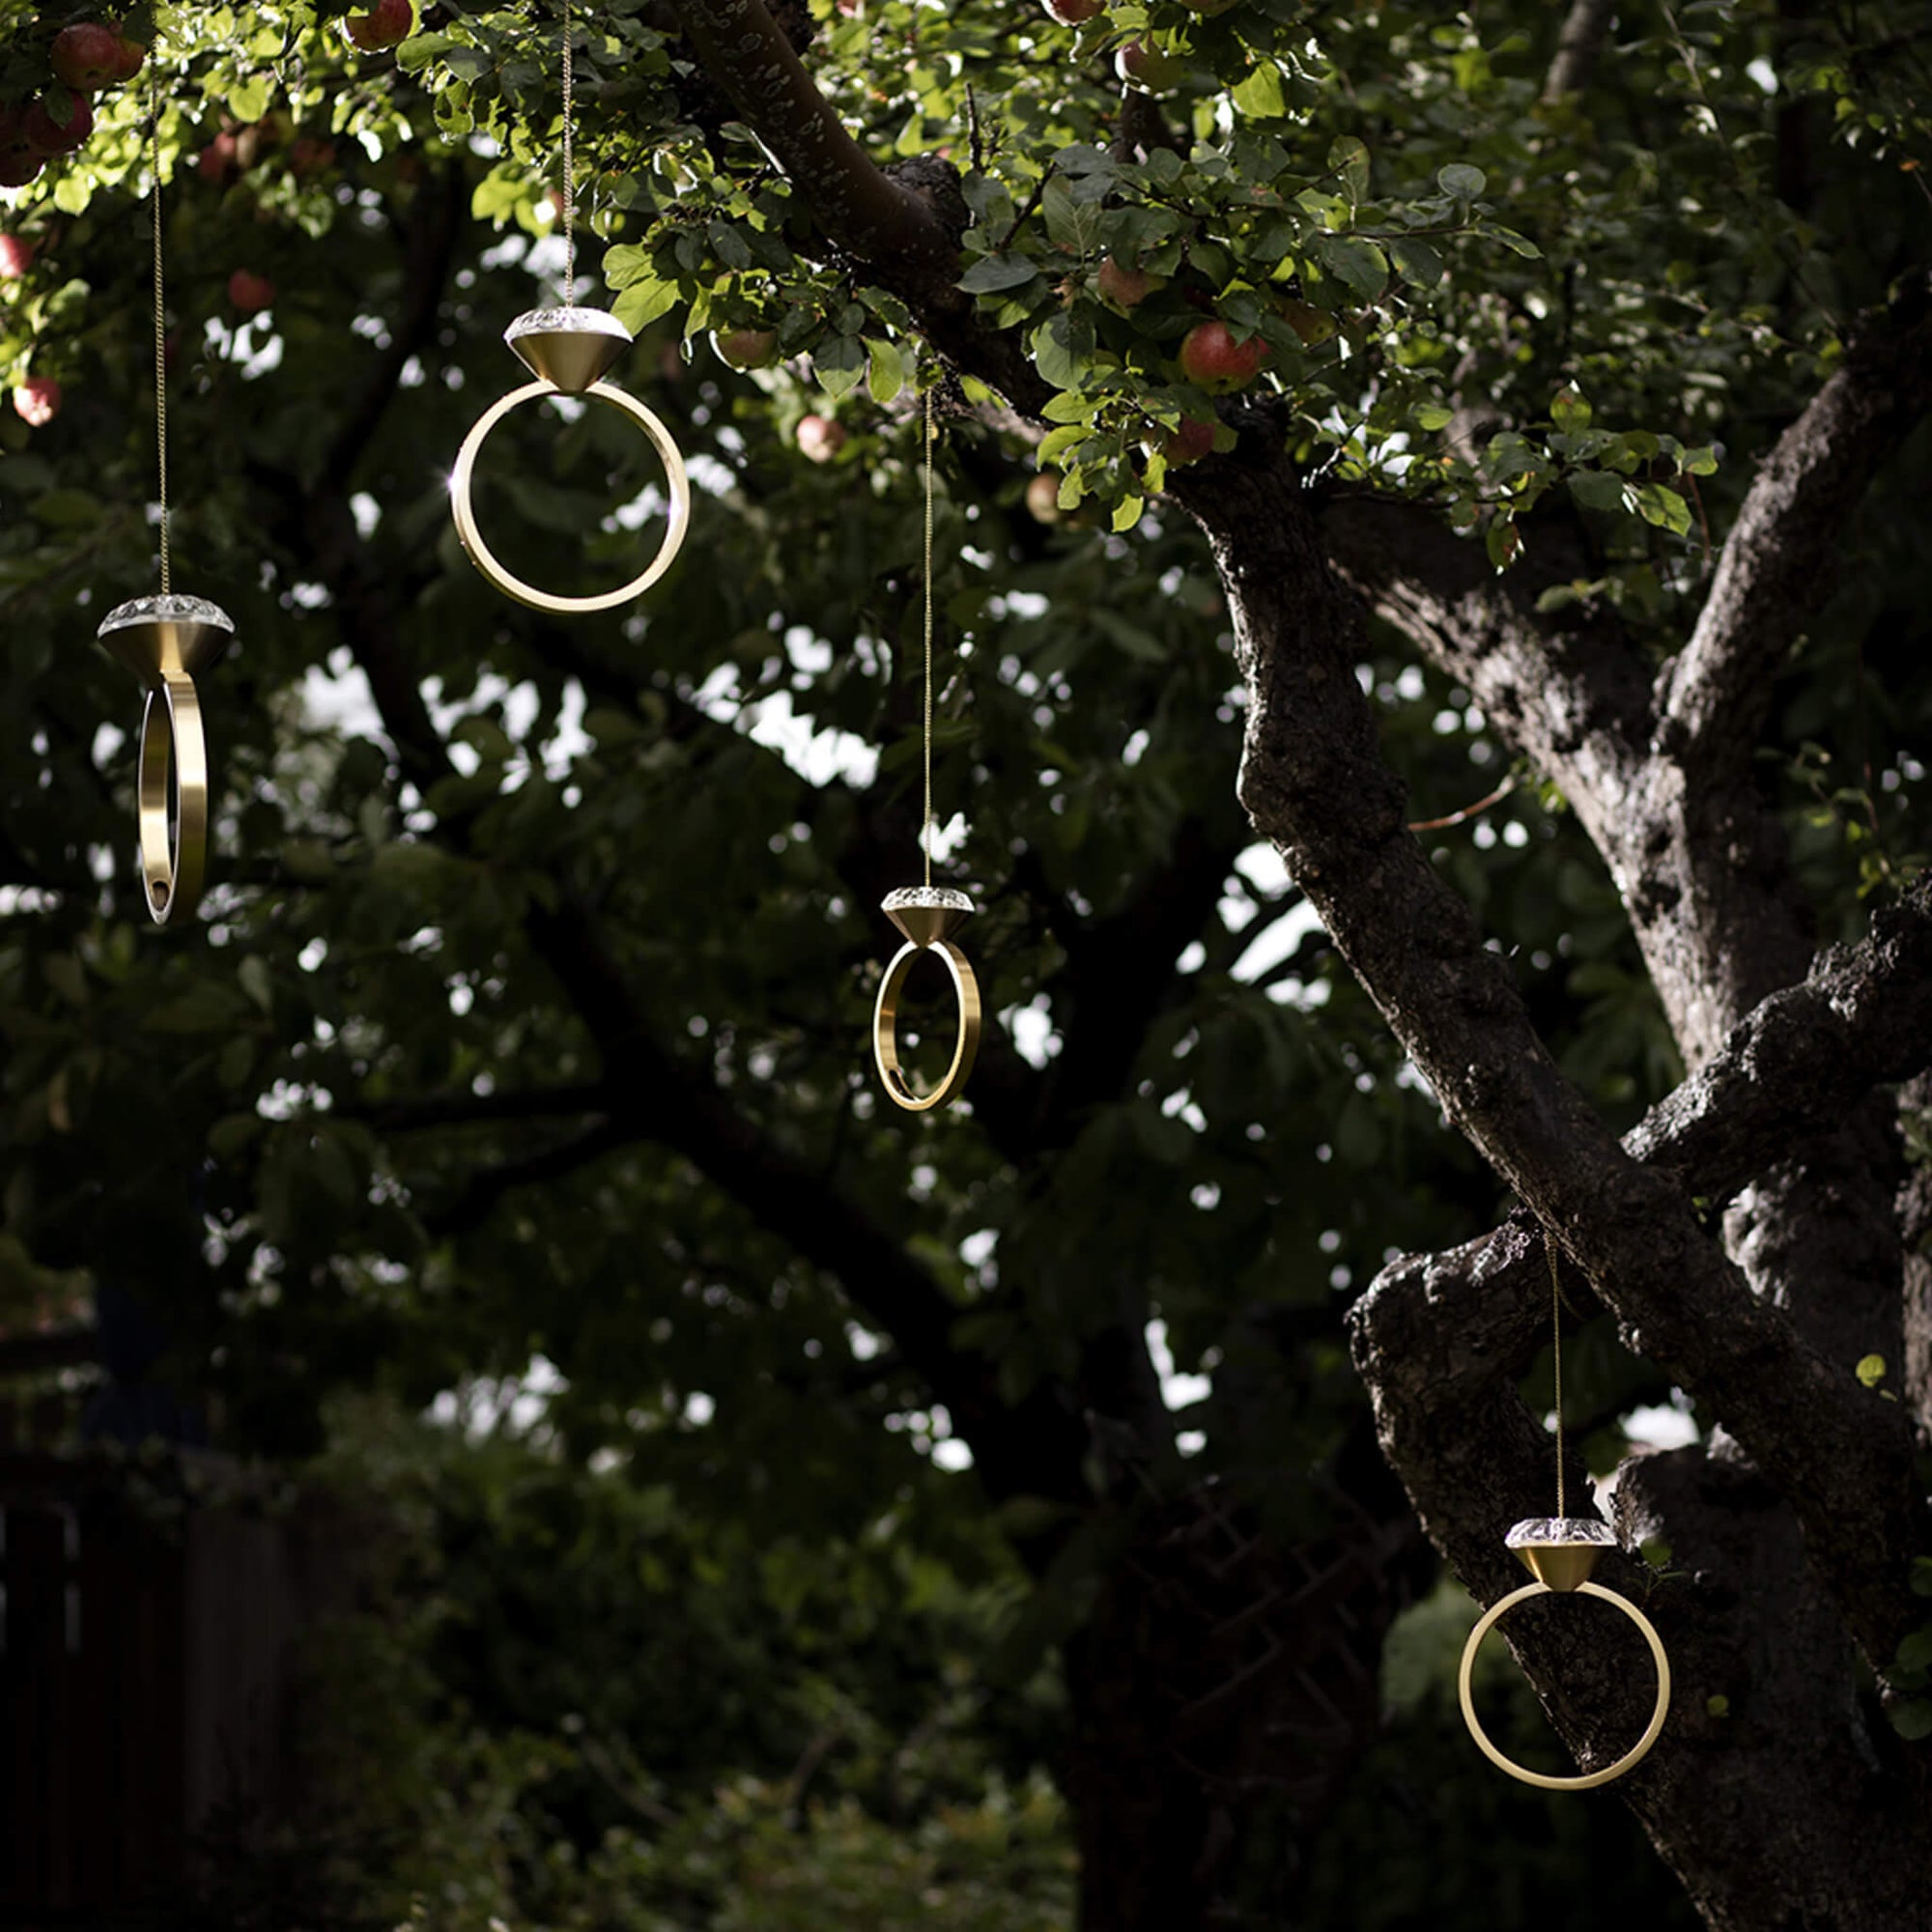 4 goldene Dimand Futterringe für Vögel hängen im Garten in den Bäumen.